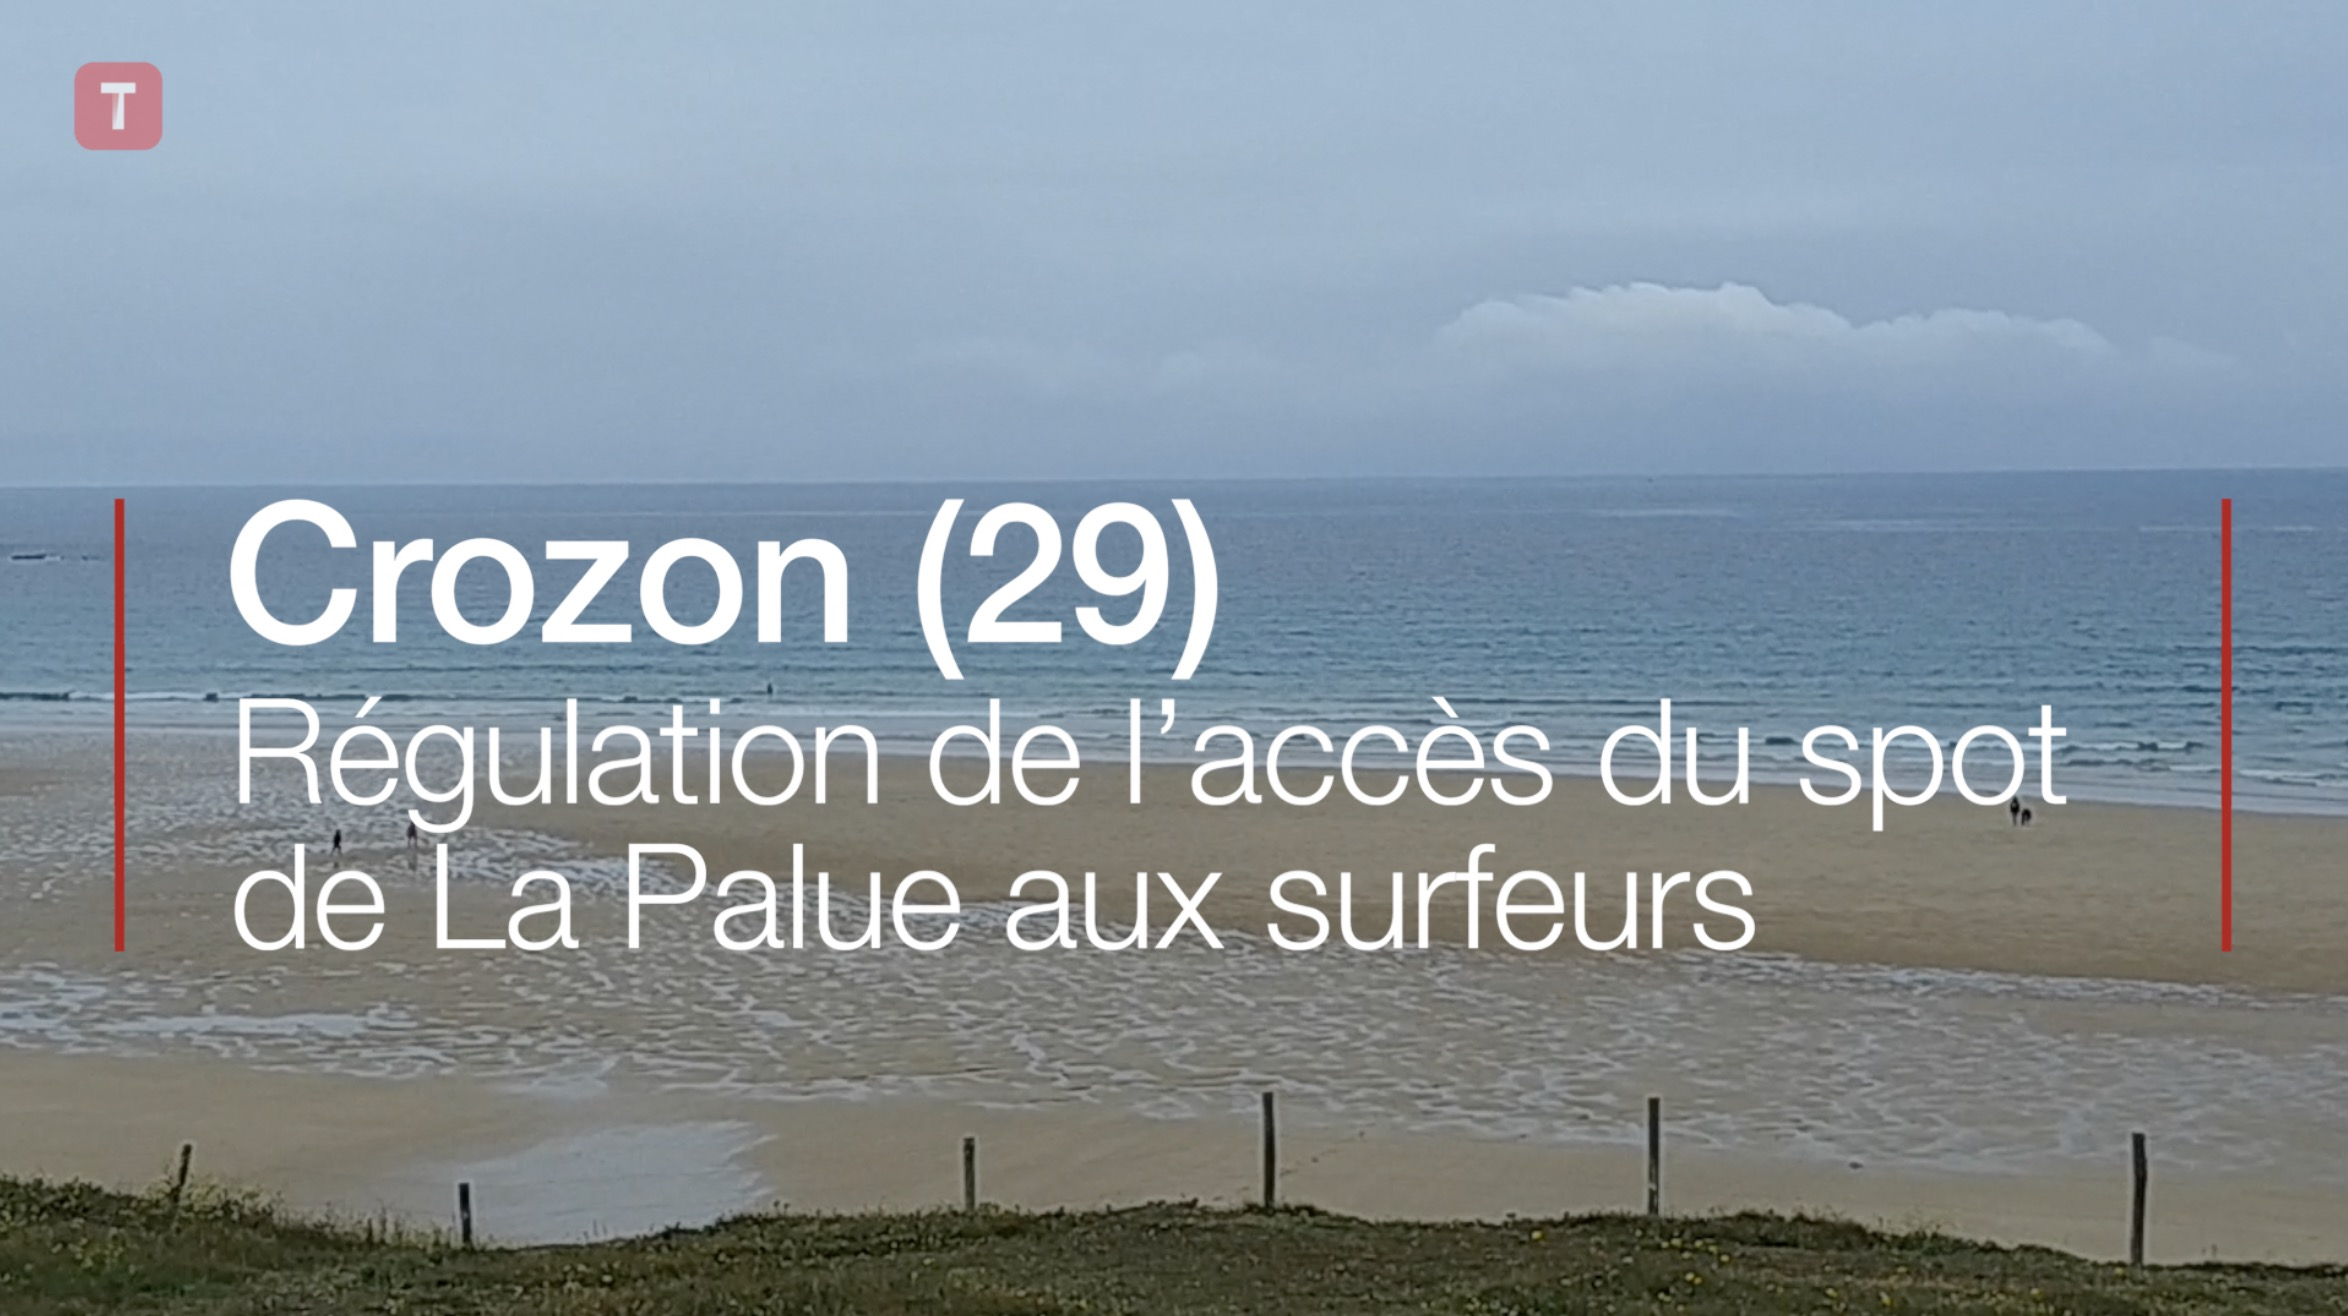 Crozon (29). Régulation de l’accès du spot de La Palue aux surfeurs (Le Télégramme)